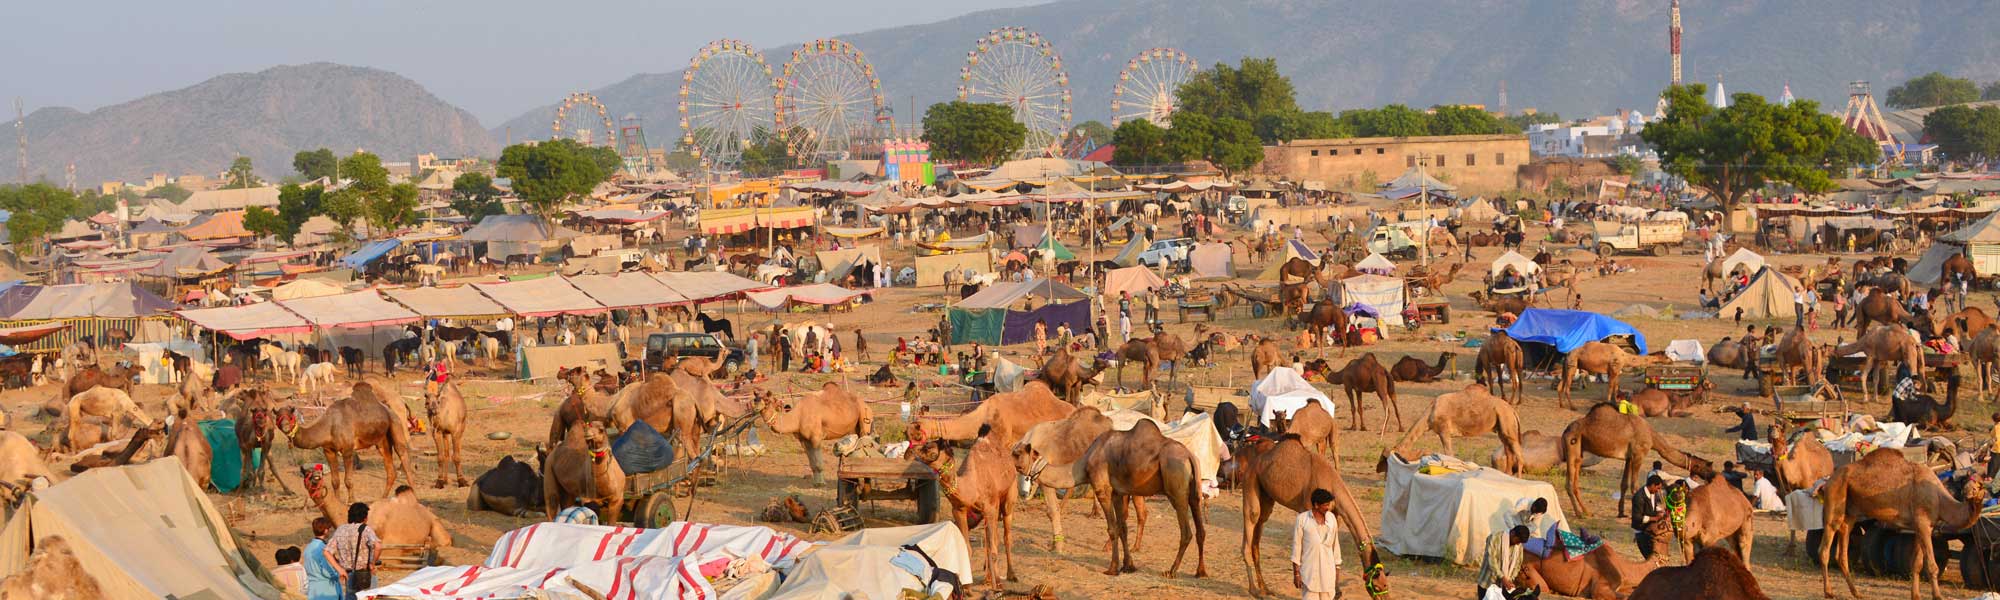 pushkar-camel-fair-2017-origin